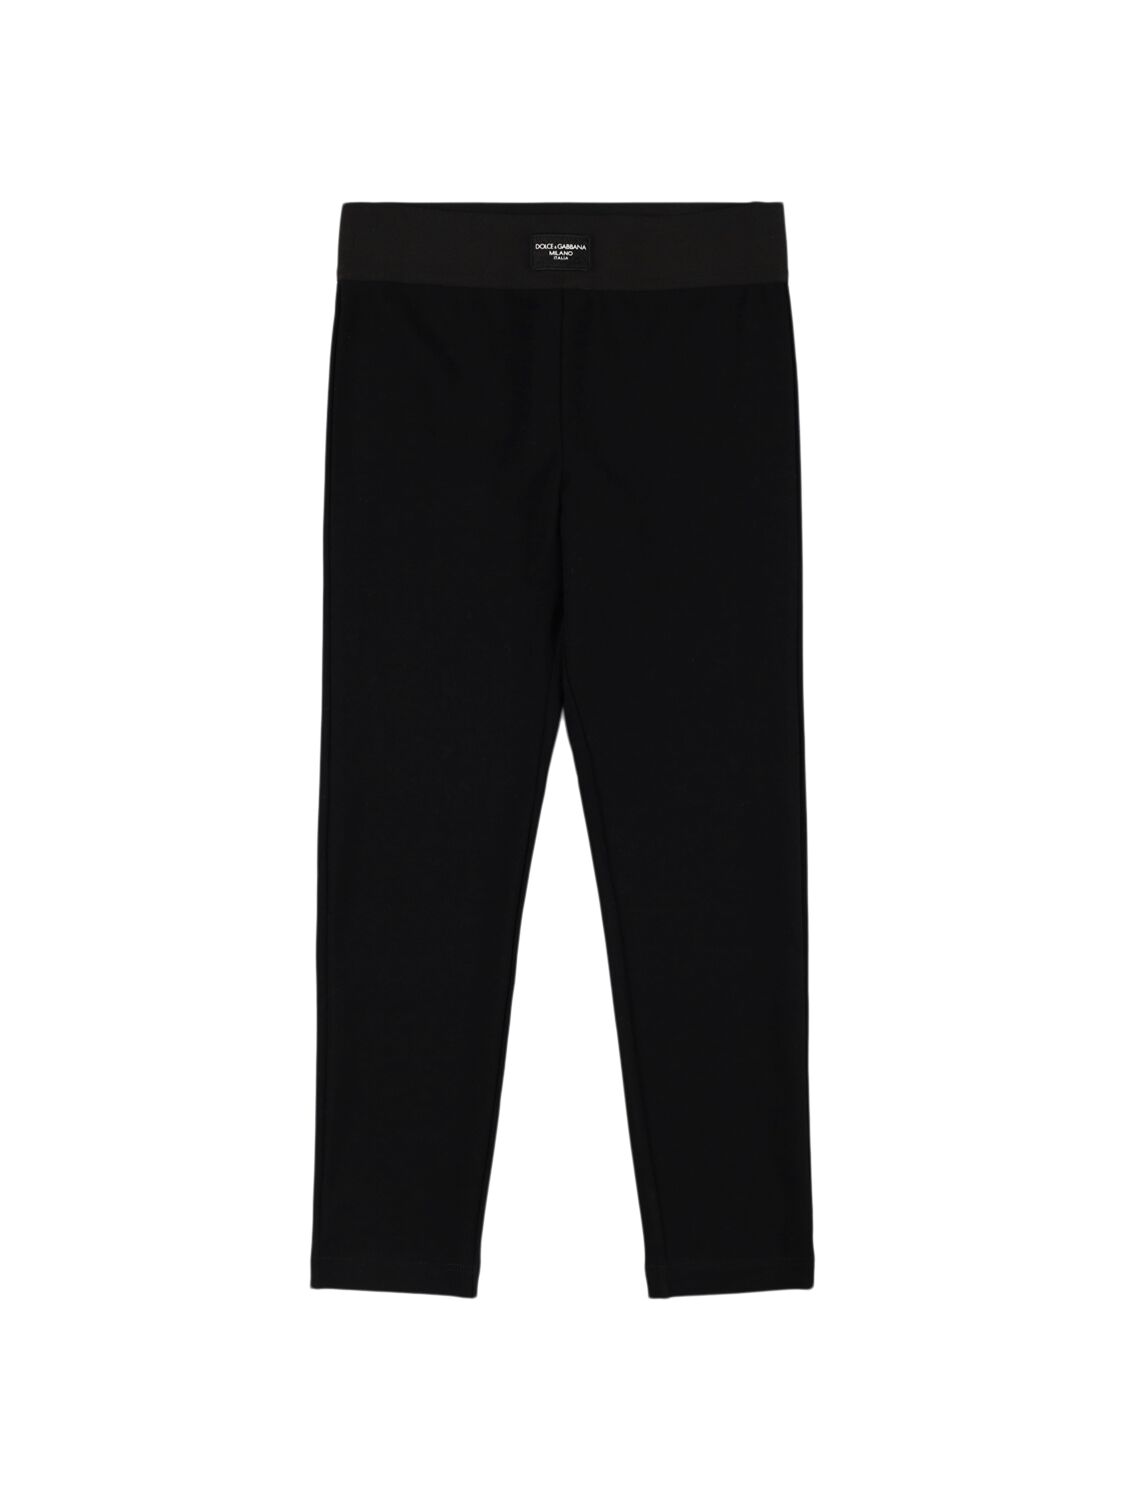 Dolce & Gabbana Stretch Cotton Leggings In Black